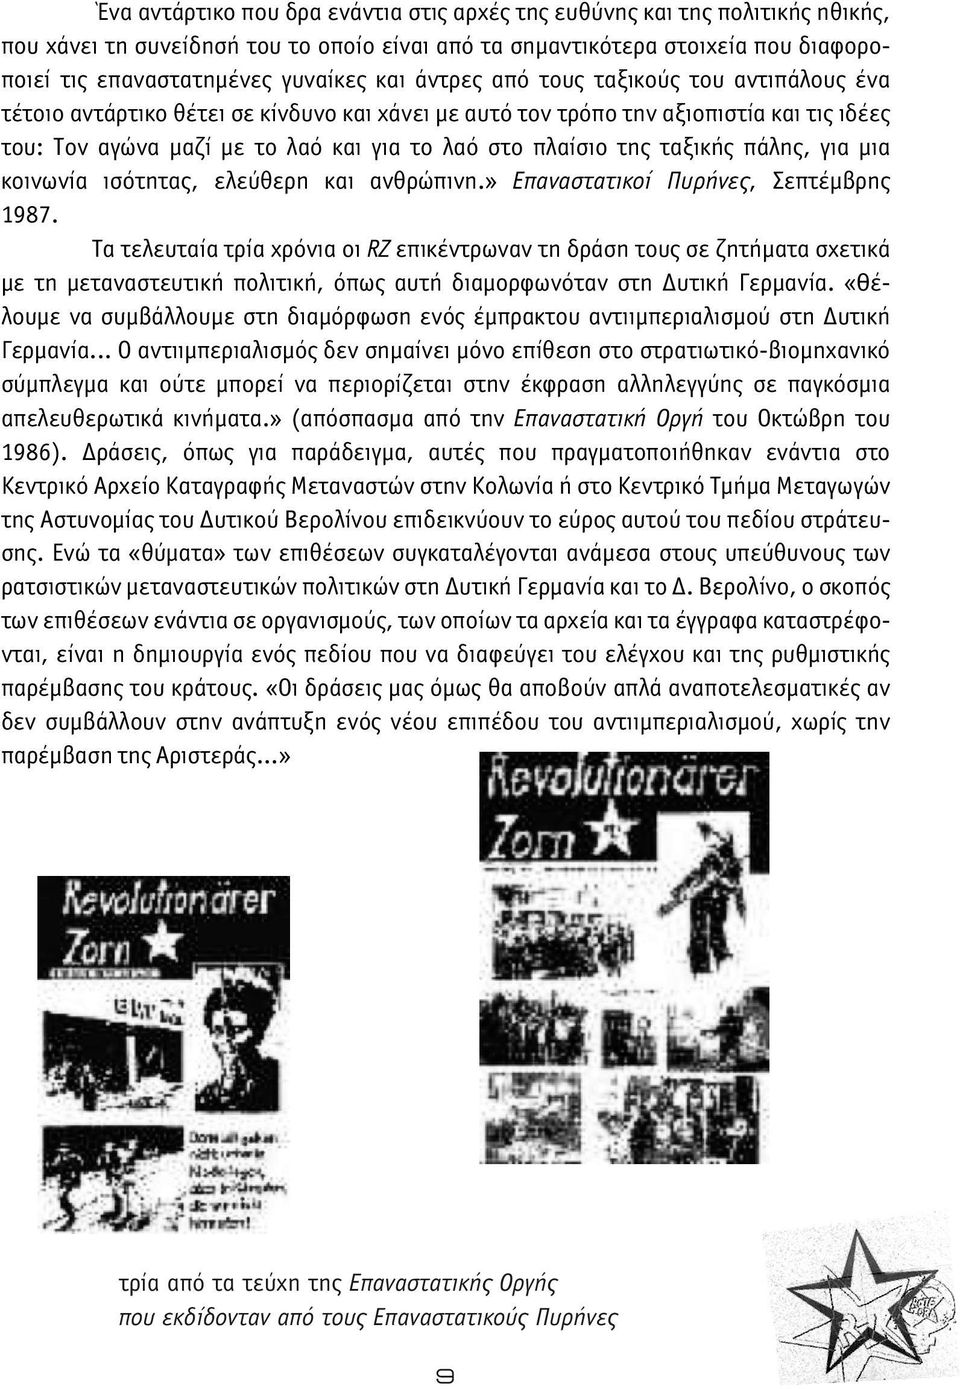 ταξικής πάλης, για μια κοινωνία ισότητας, ελεύθερη και ανθρώπινη.» Επαναστατικοί Πυρήνες, Σεπτέμβρης 1987.